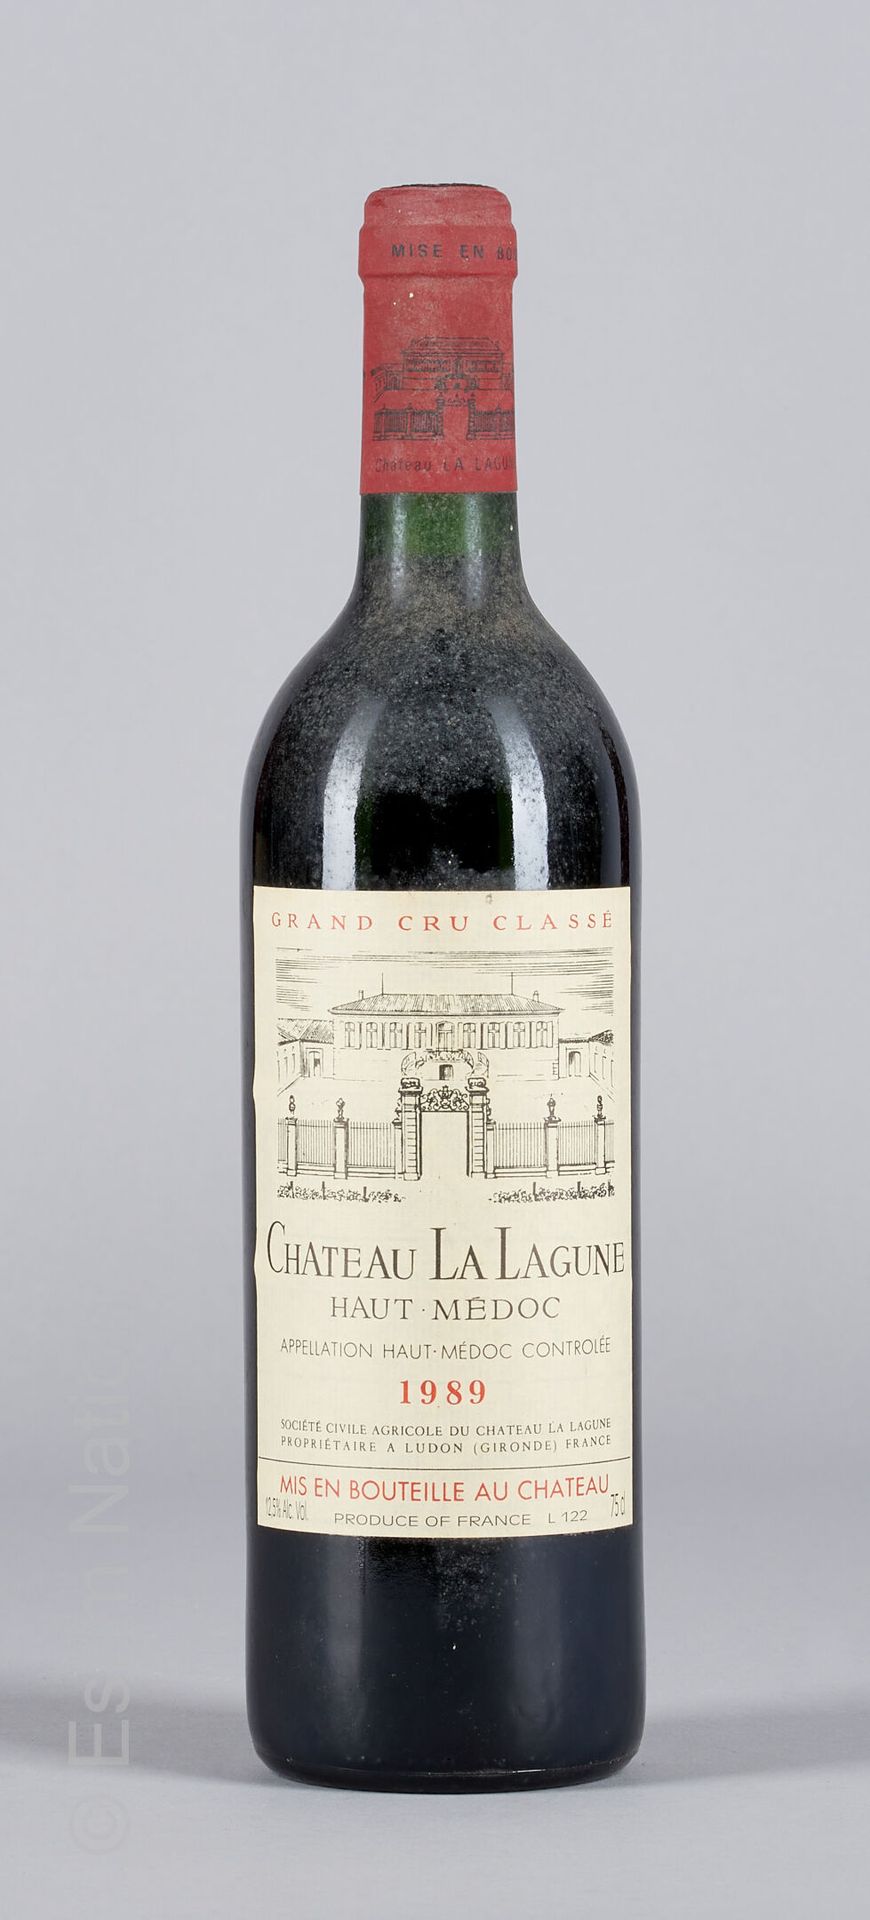 BORDEAUX 1 bottle Château La Lagune 1986 3rd GC Haut-Médoc

(E. F, tlm)